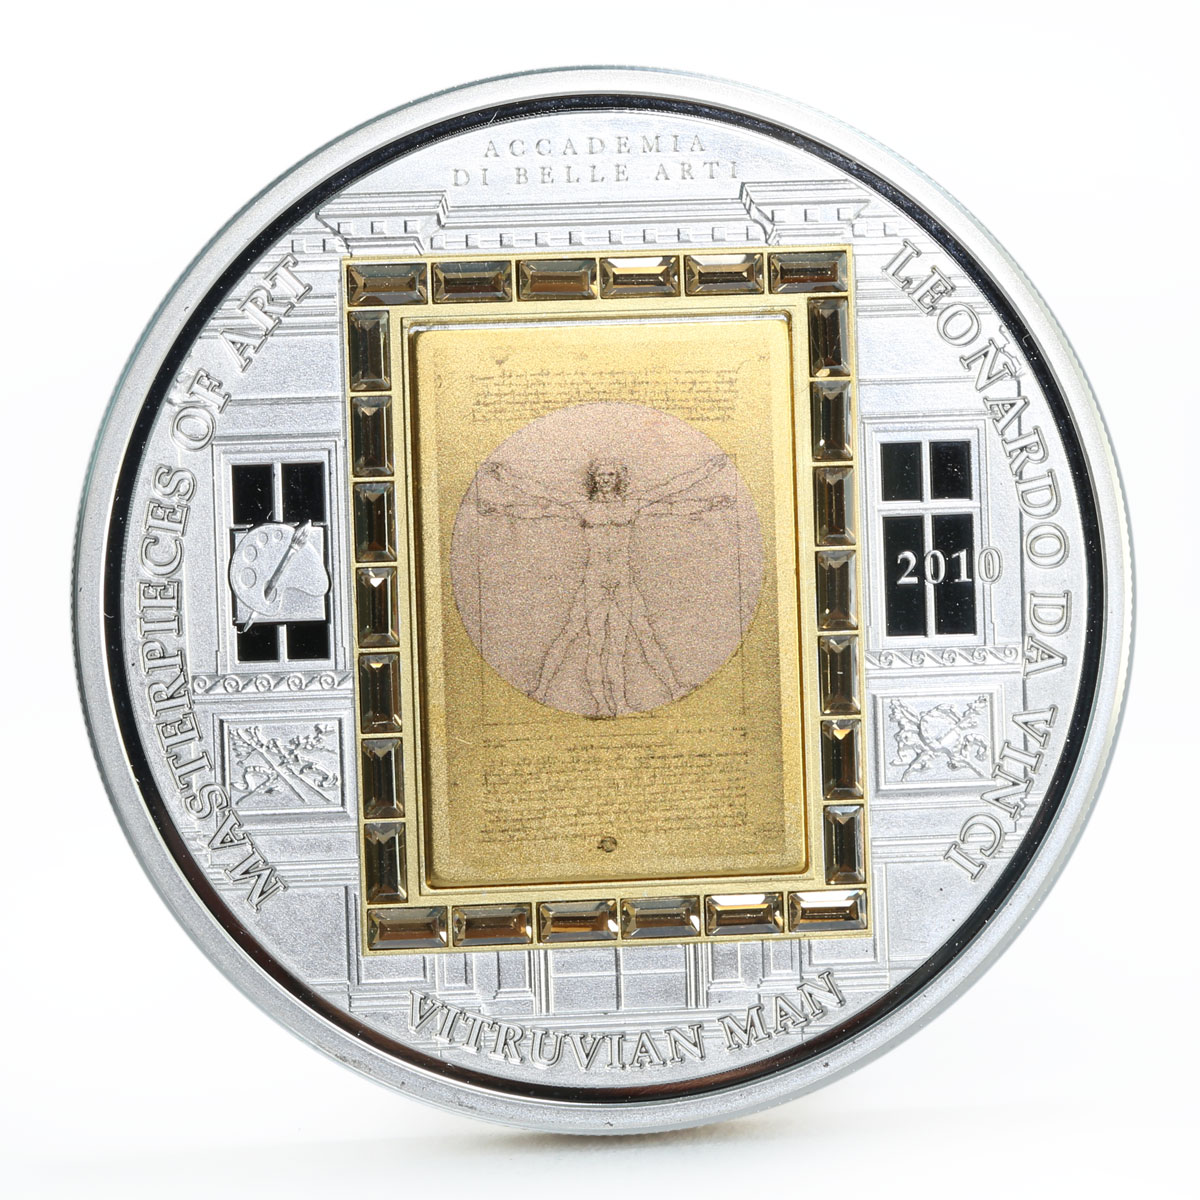 Cook Islands 20 dollars Da Vinci Art Vitruvian Man silver coin 2010